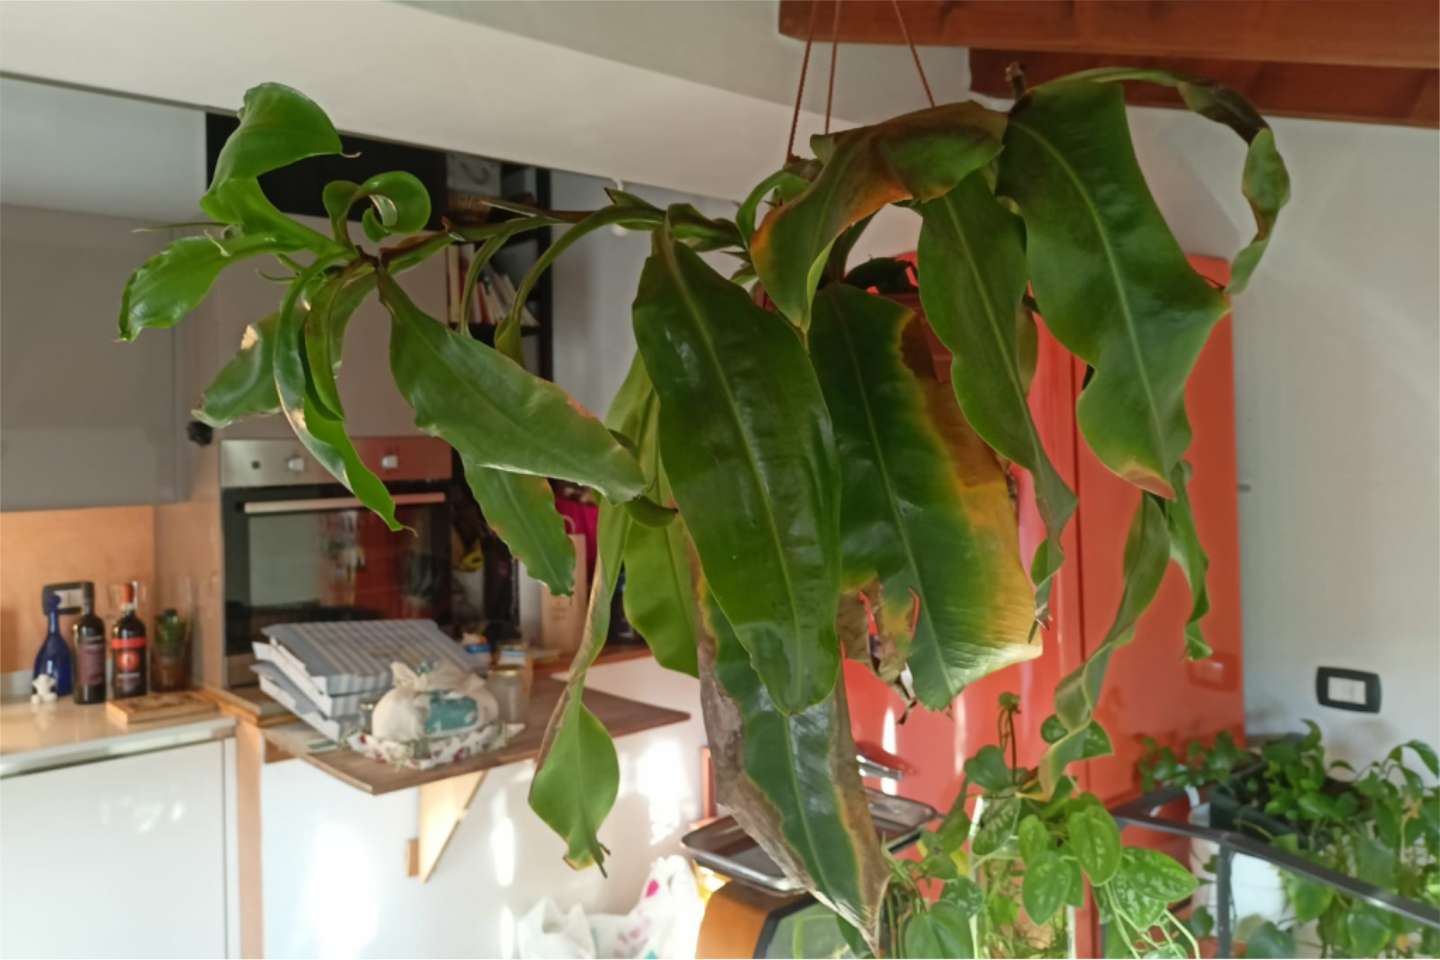 pianta di nepenthes pendente dal soffitto